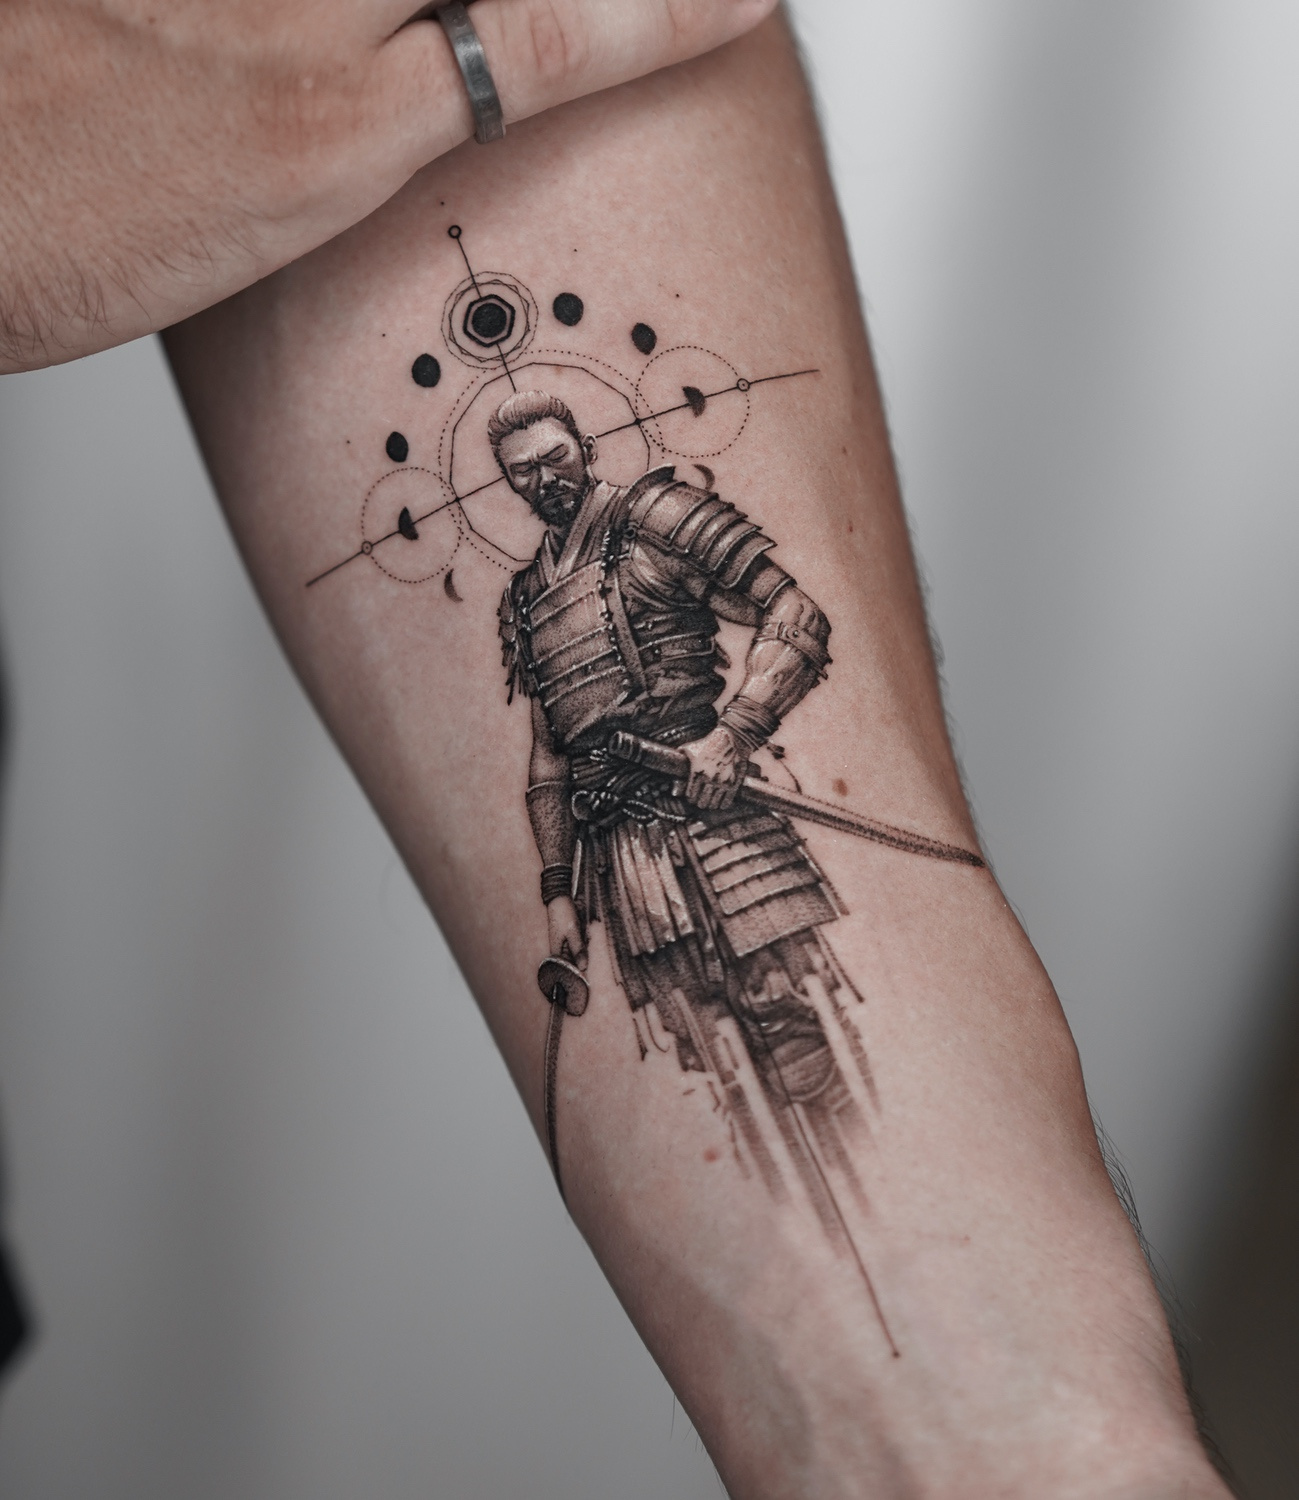 Tattoo artist Ogi